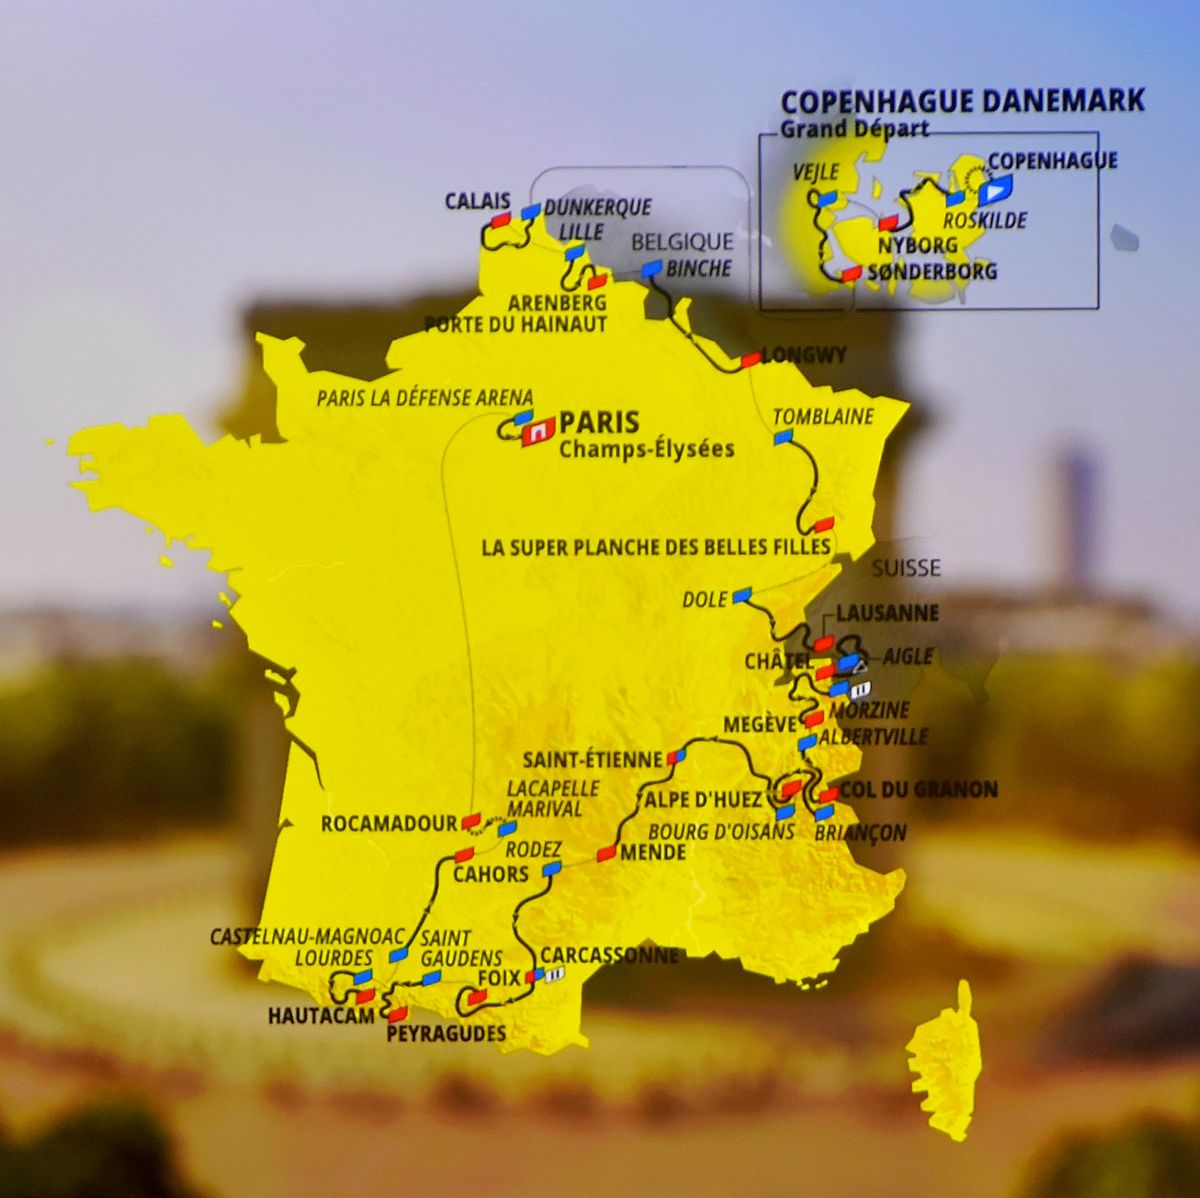 109th tour de france 2022 and 1st tour de france femmes 2022 route presentation